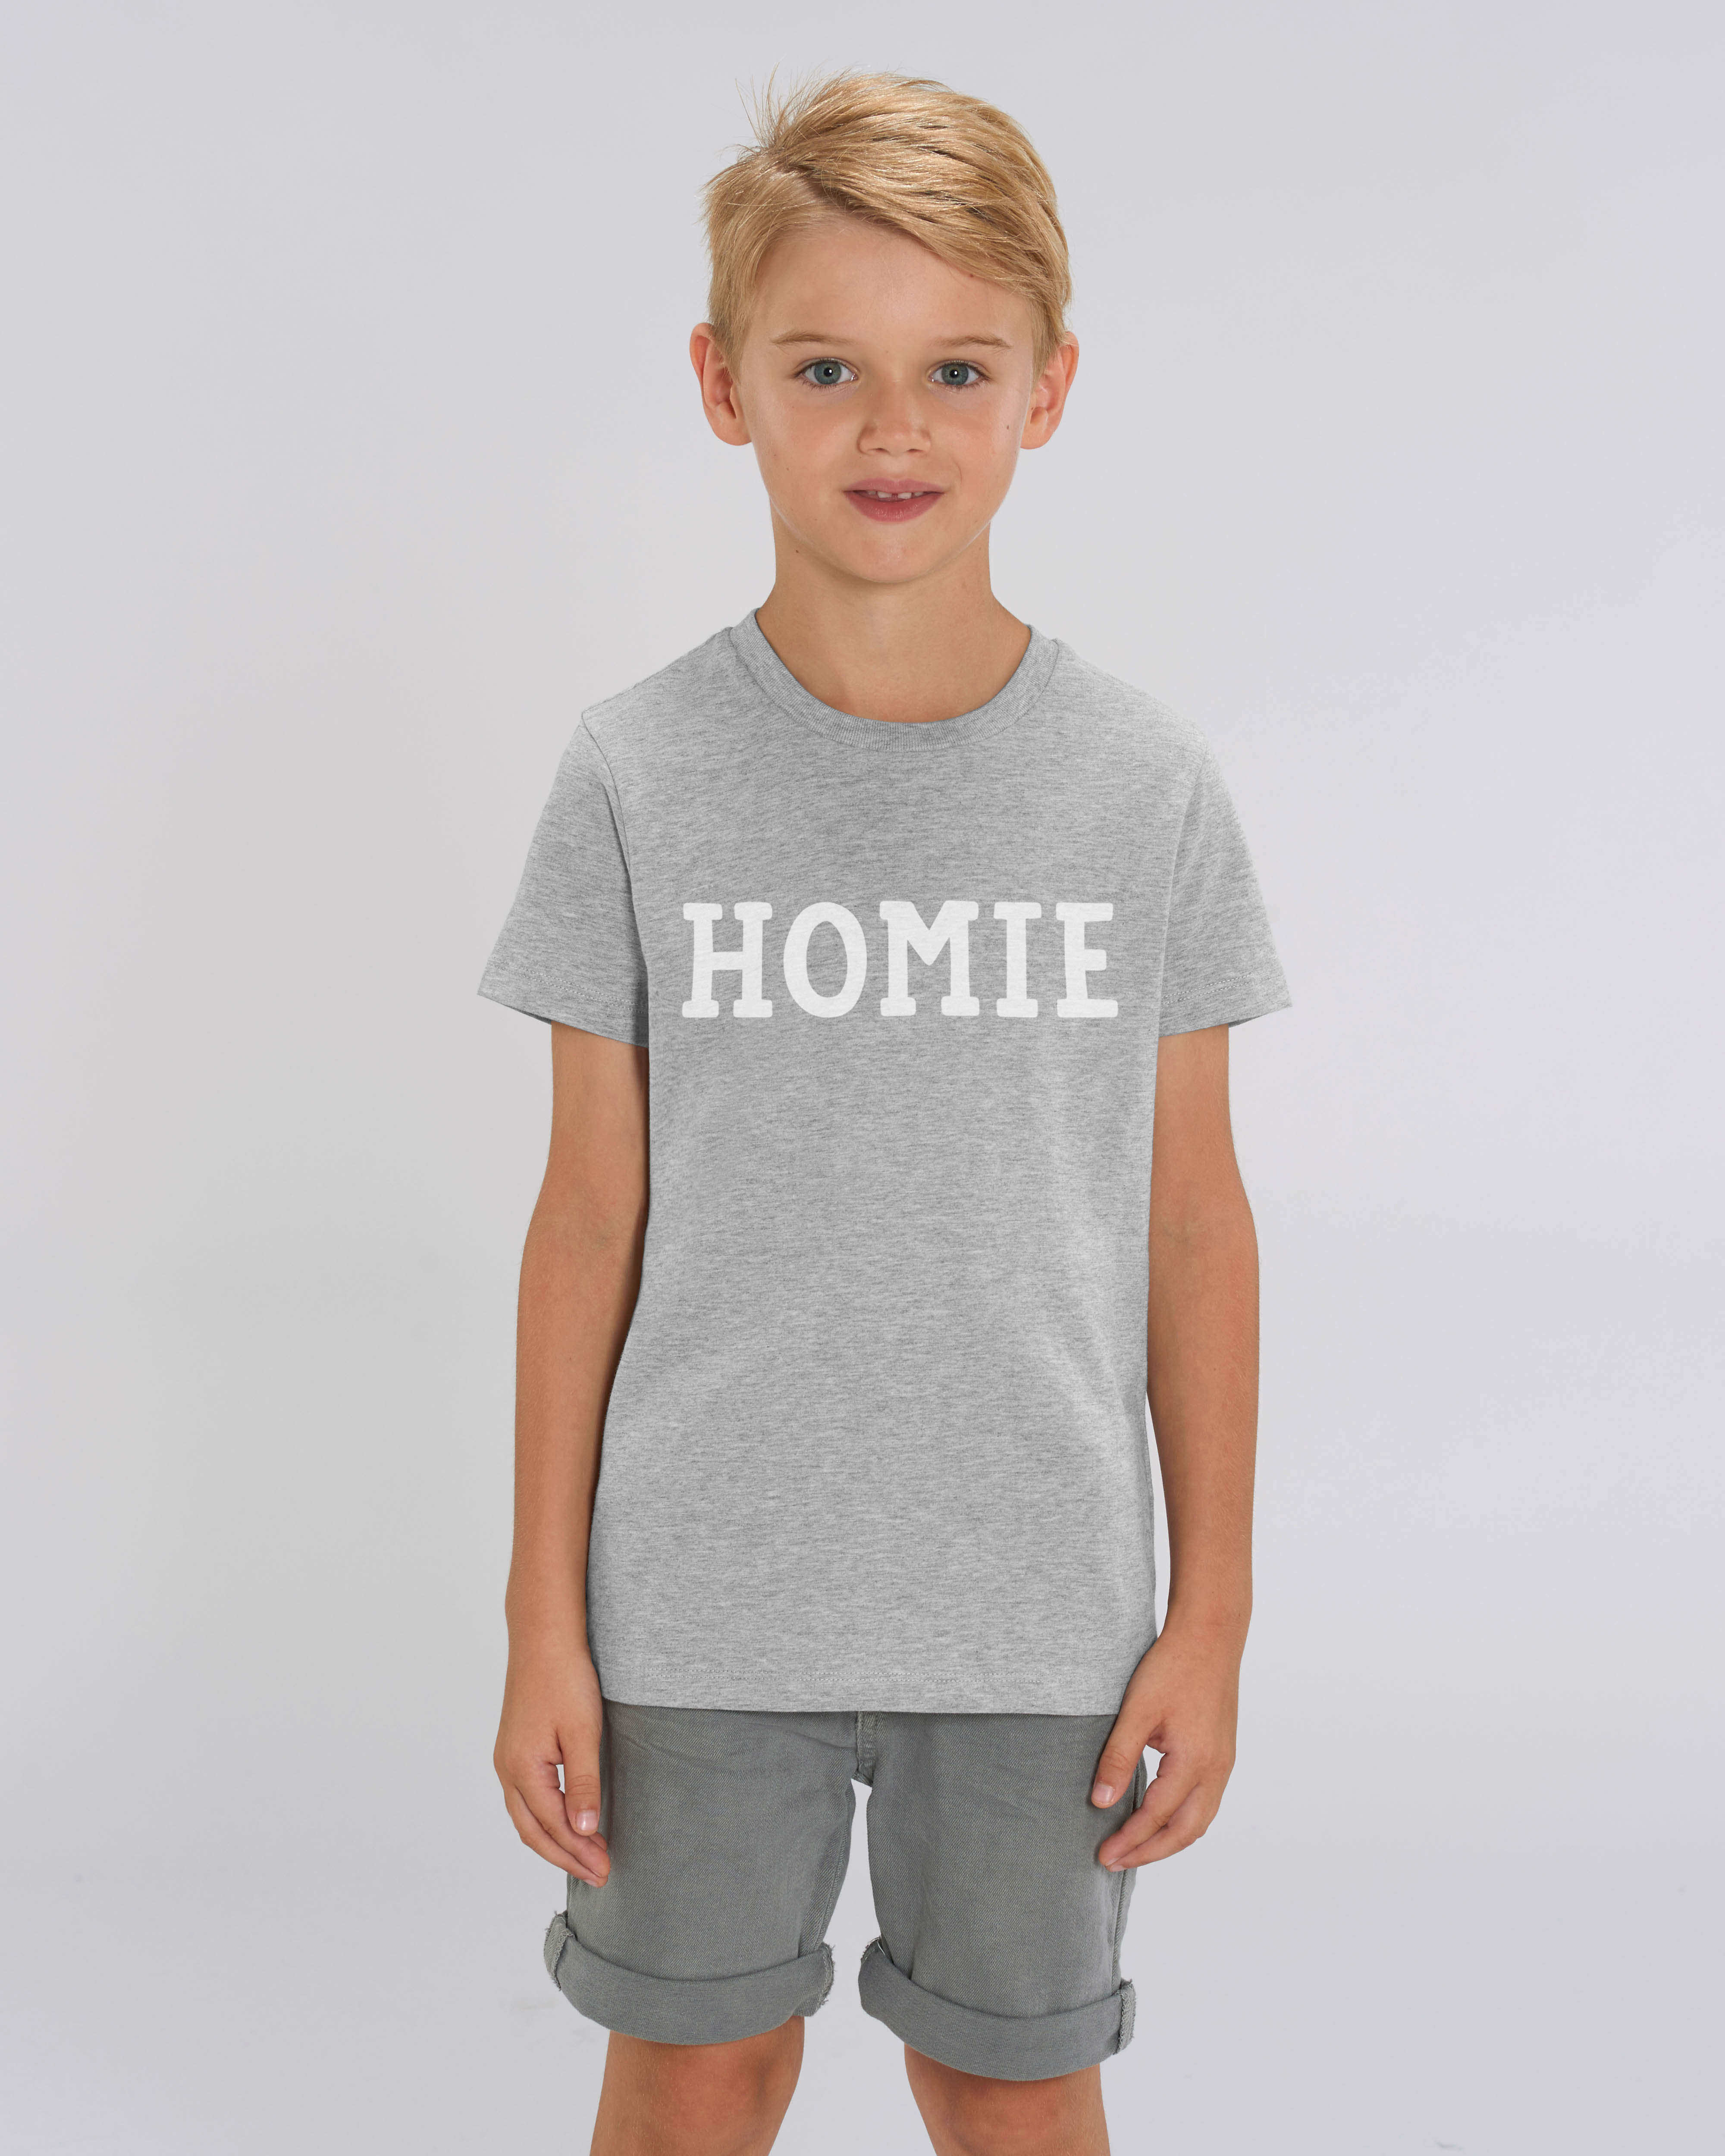 HOME Shirts für die ganze Familie